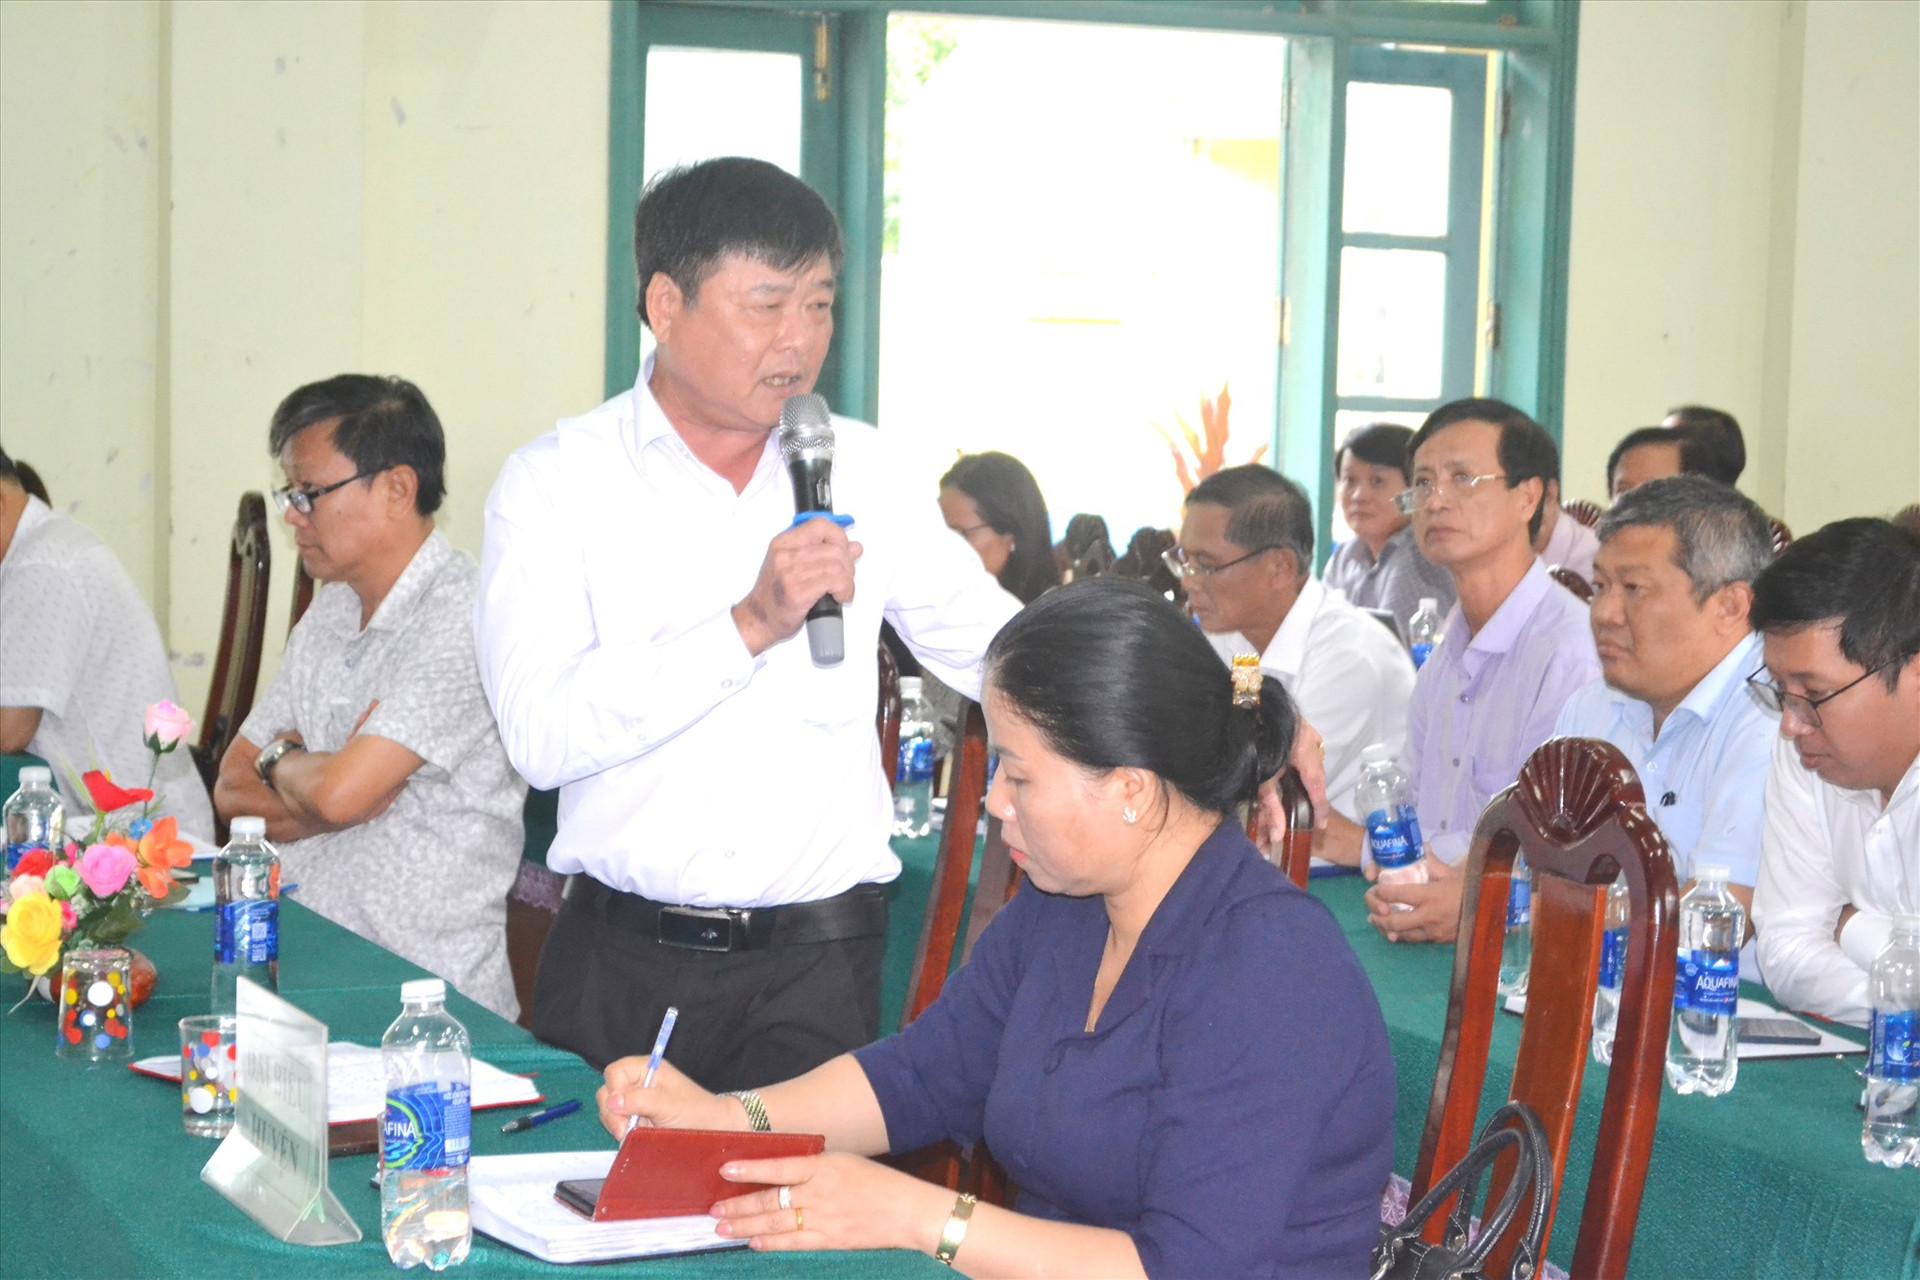 Bí thư Huyện ủy Nam Giang - ông Lê Văn Hường đề nghị các xã tăng cường tuyên truyền về lợi ích của chương trình xây dựng nông thôn mới. Ảnh: C.T